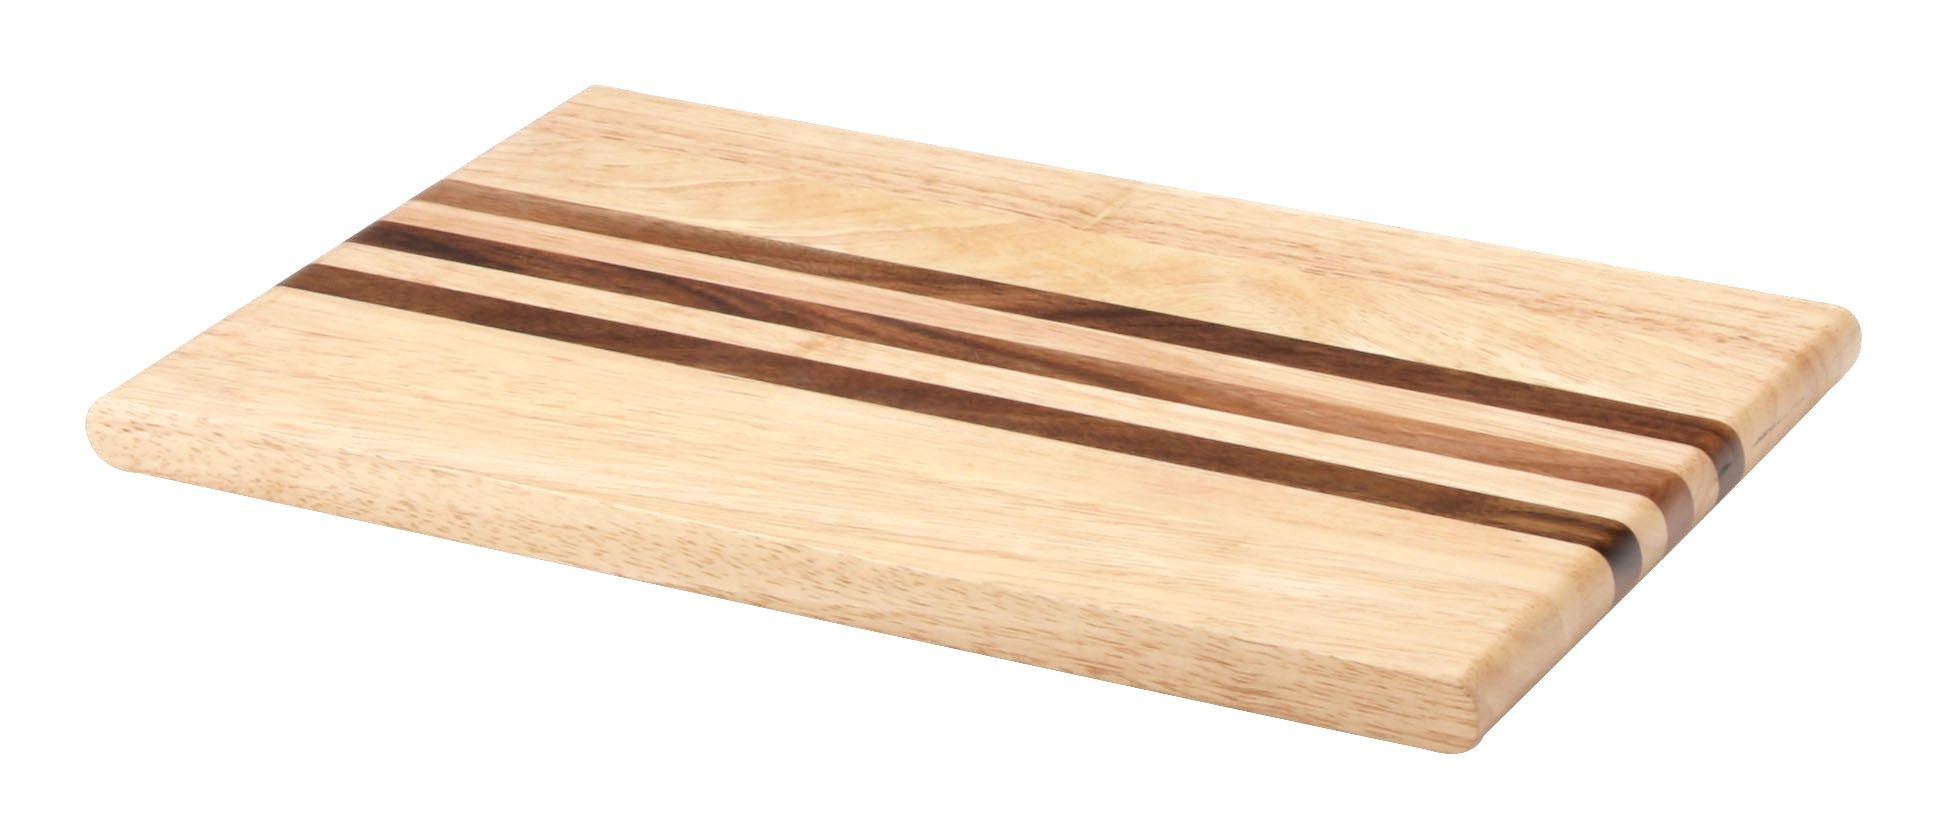 Tranchierbrett, Größen Gummibaumholz in Continenta mit Schneidebrett integrierten Akazienholz-Streifen, verschiedenen erhältlich